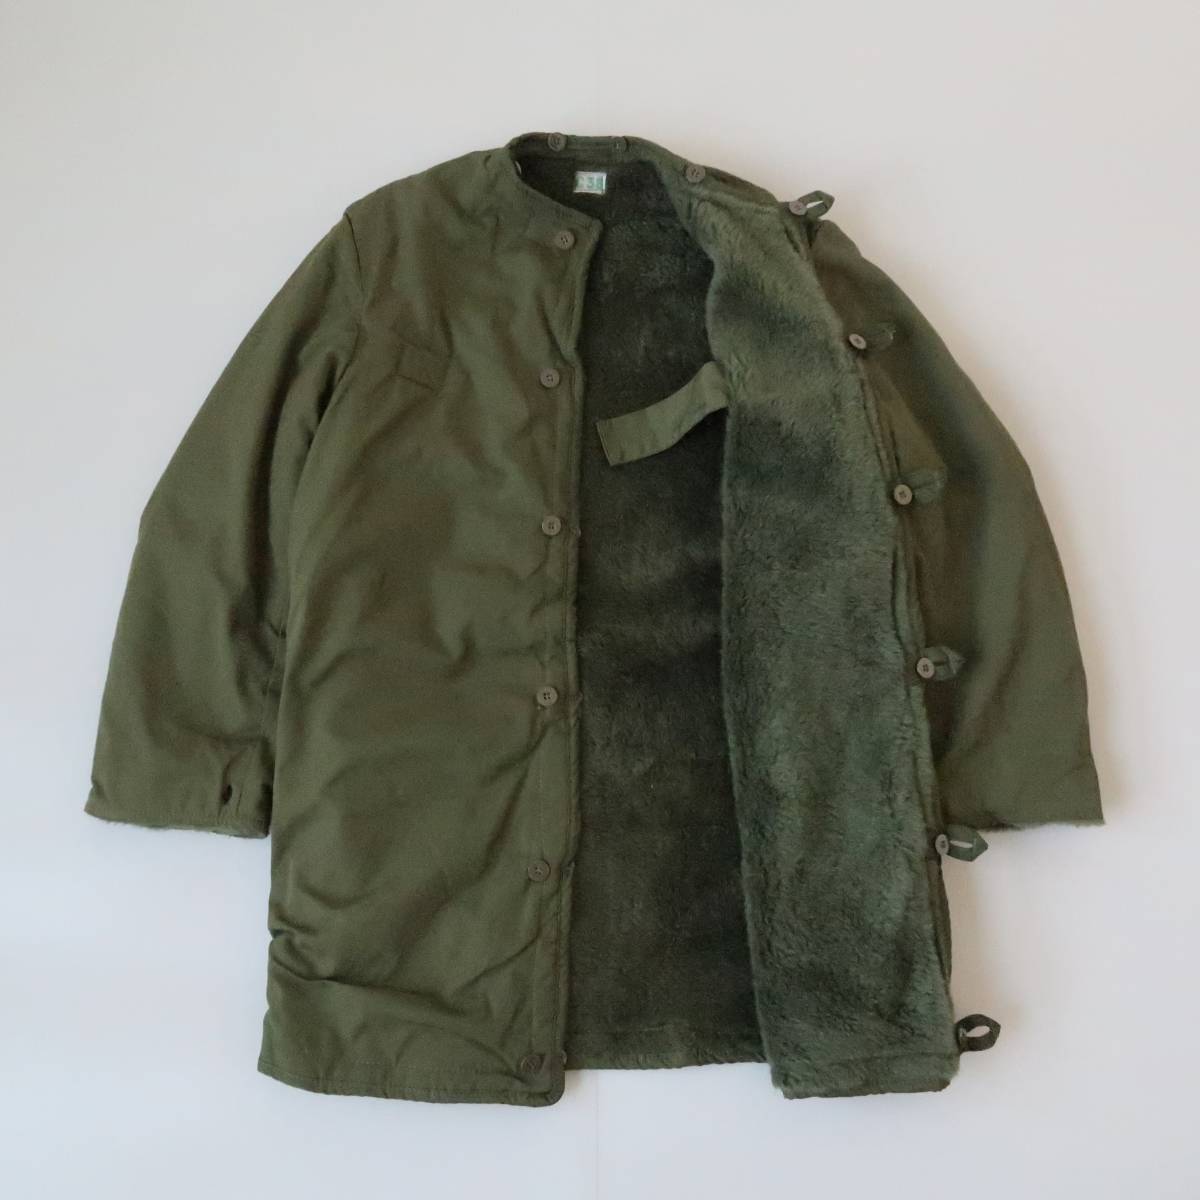  меньше размер [DEADSTOCK 70\'s Швеция армия M-59 over пальто для двусторонний подкладка C38] Vintage искусственный мех Mod's Coat XS